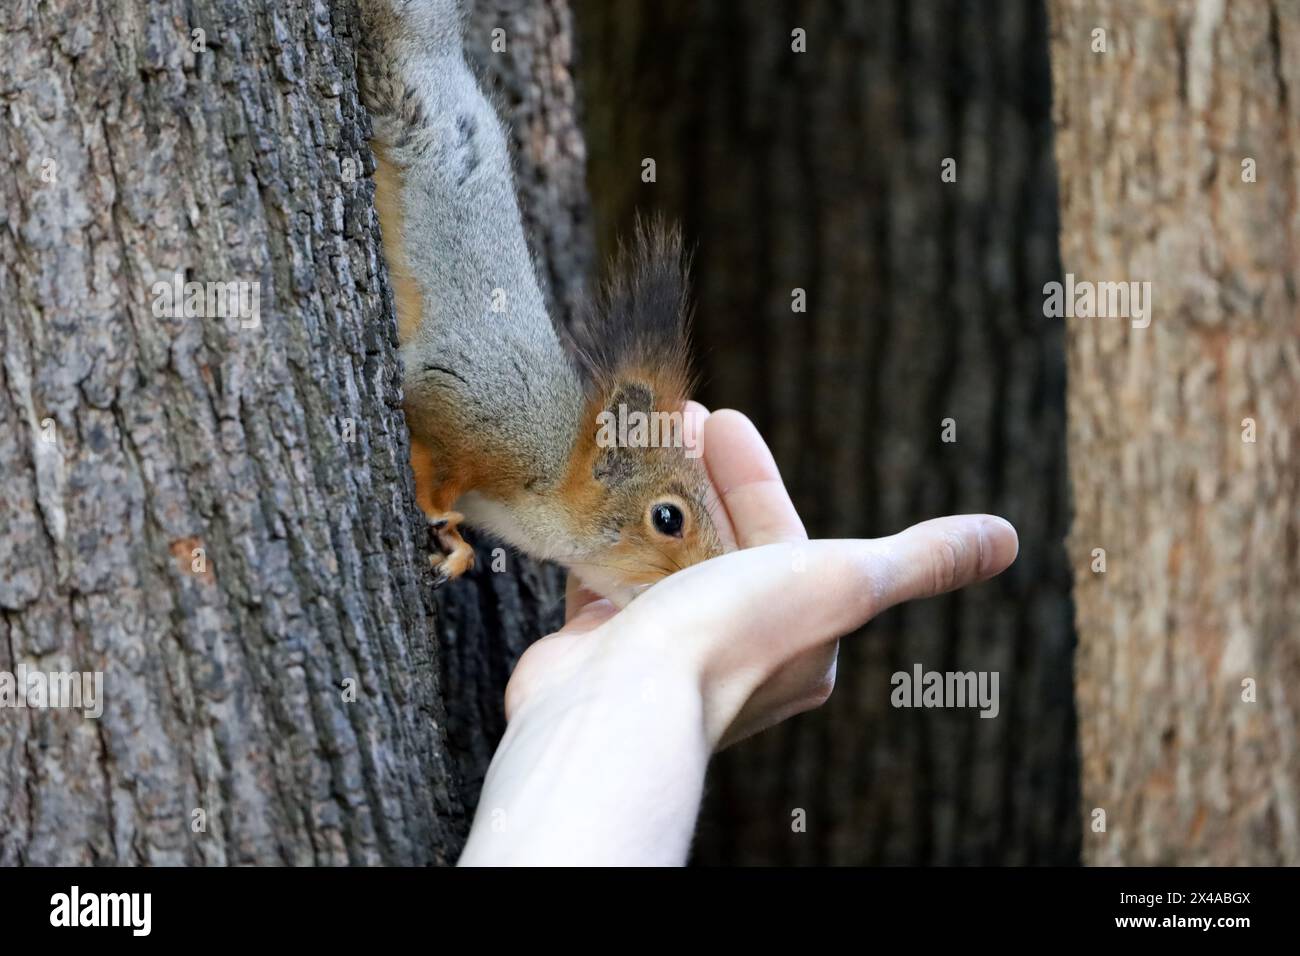 Lo scoiattolo rosso toglie un dado da una mano umana. Dar da mangiare agli animali selvatici in un parco primaverile Foto Stock